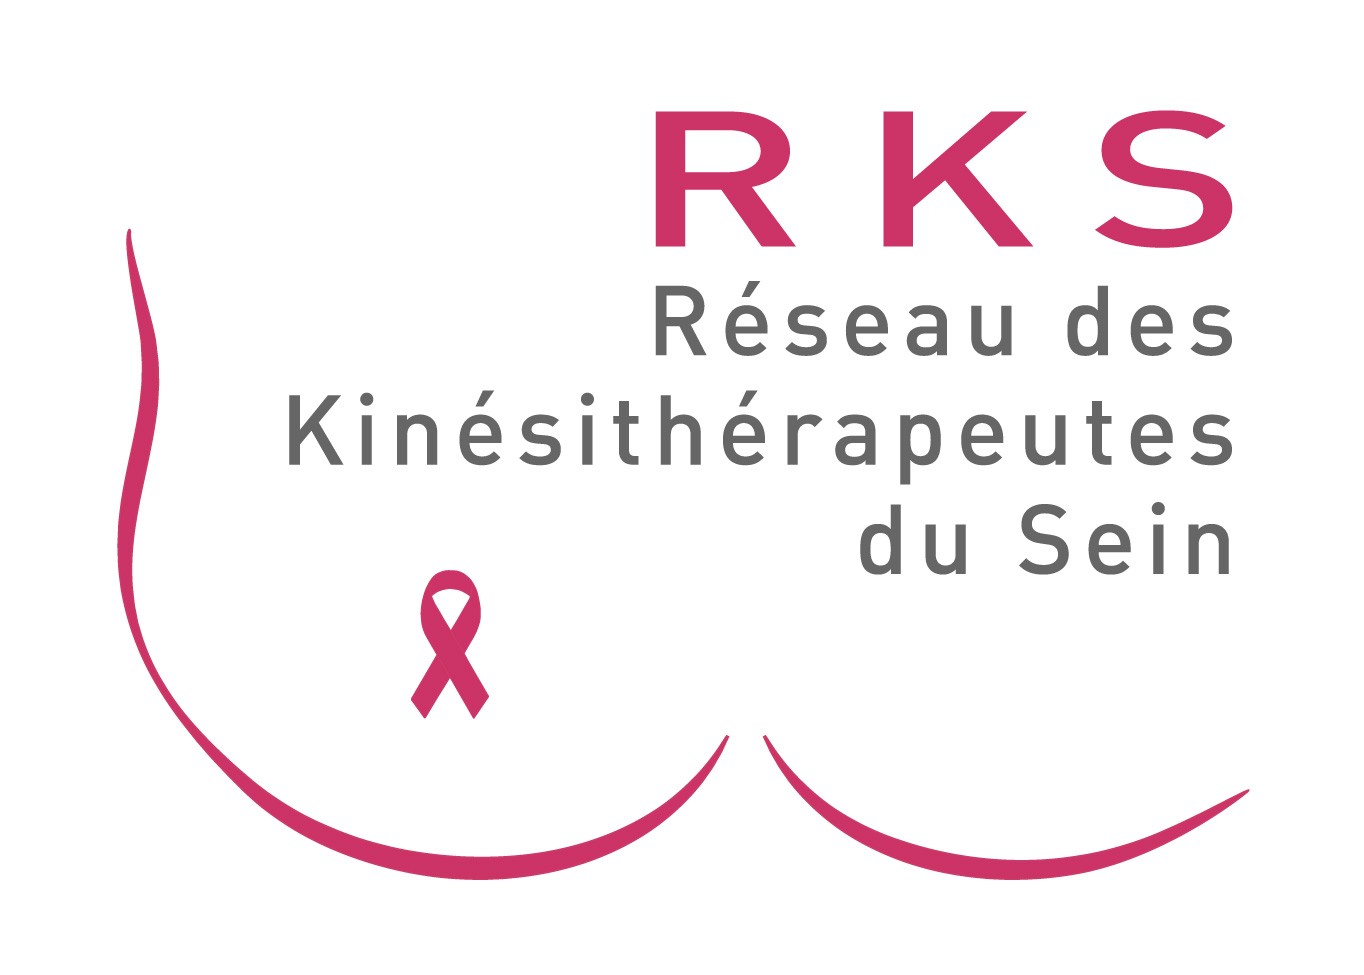 Kiné et cancer du sein : l'association